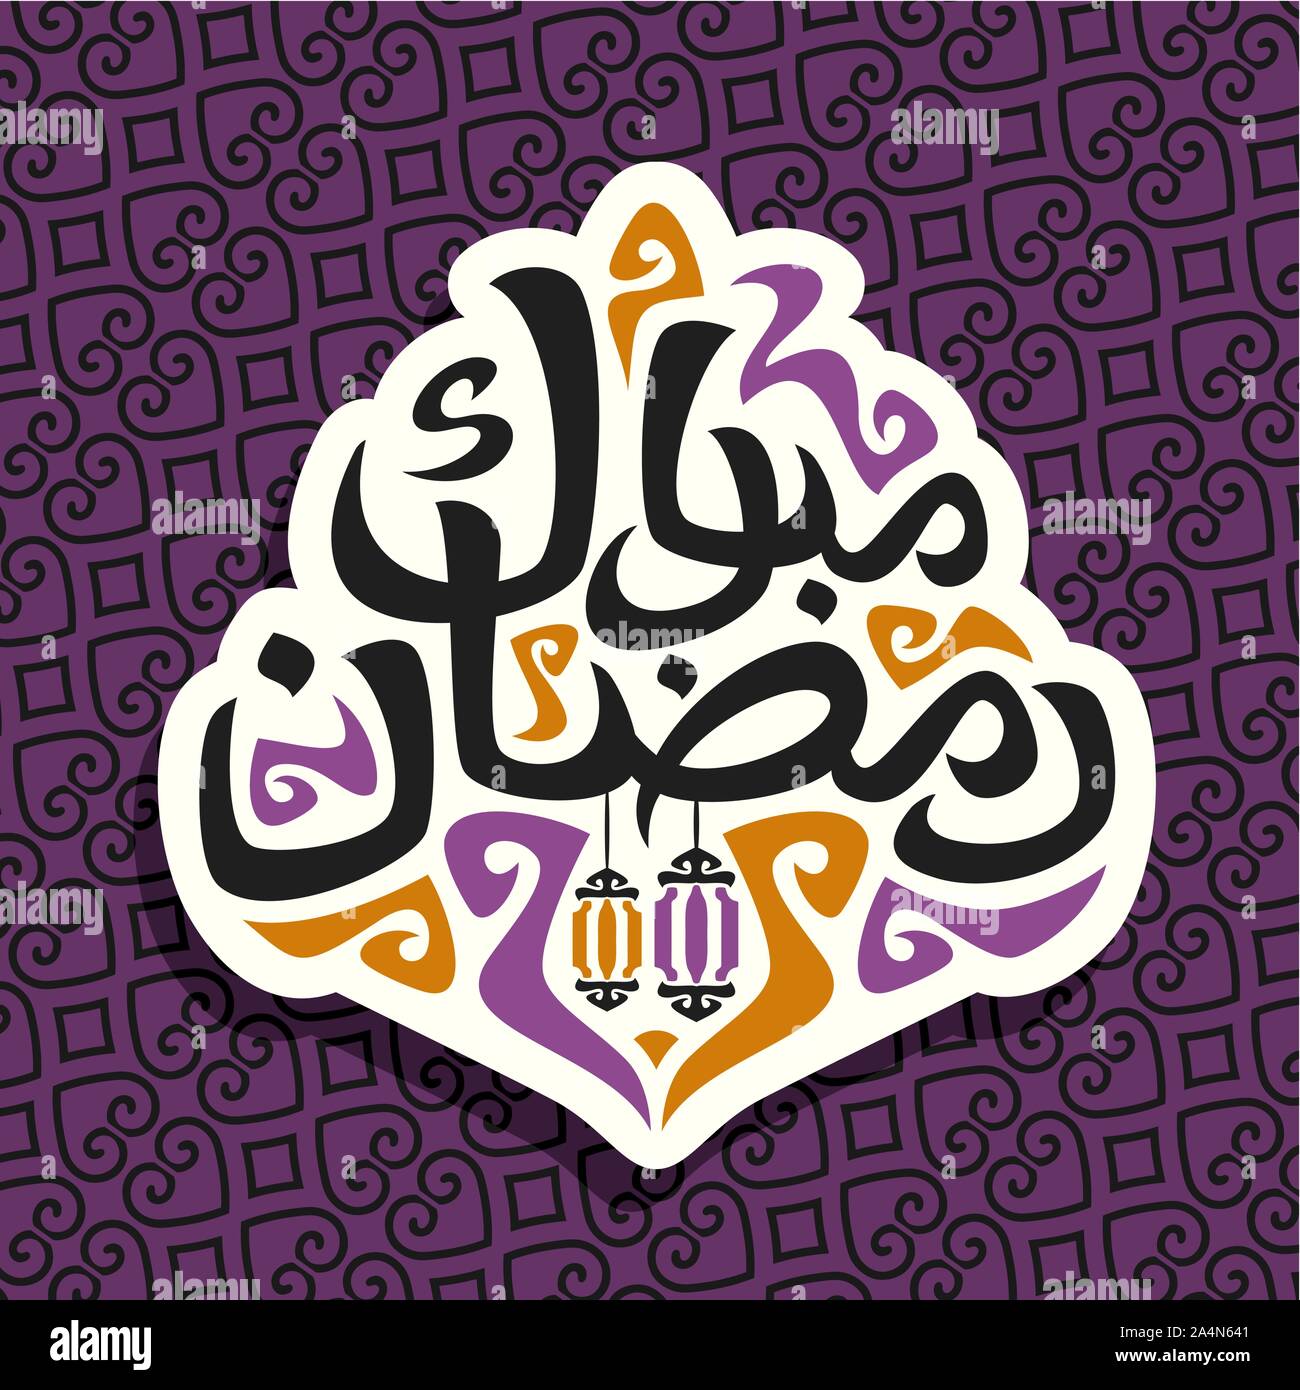 Il logo del vettore per il messaggio di saluto musulmano calligraphy Ramadan Mubarak, il taglio della carta sign con spazzola originale carattere tipografico per parole ramadan mubarak in lingua araba, Illustrazione Vettoriale